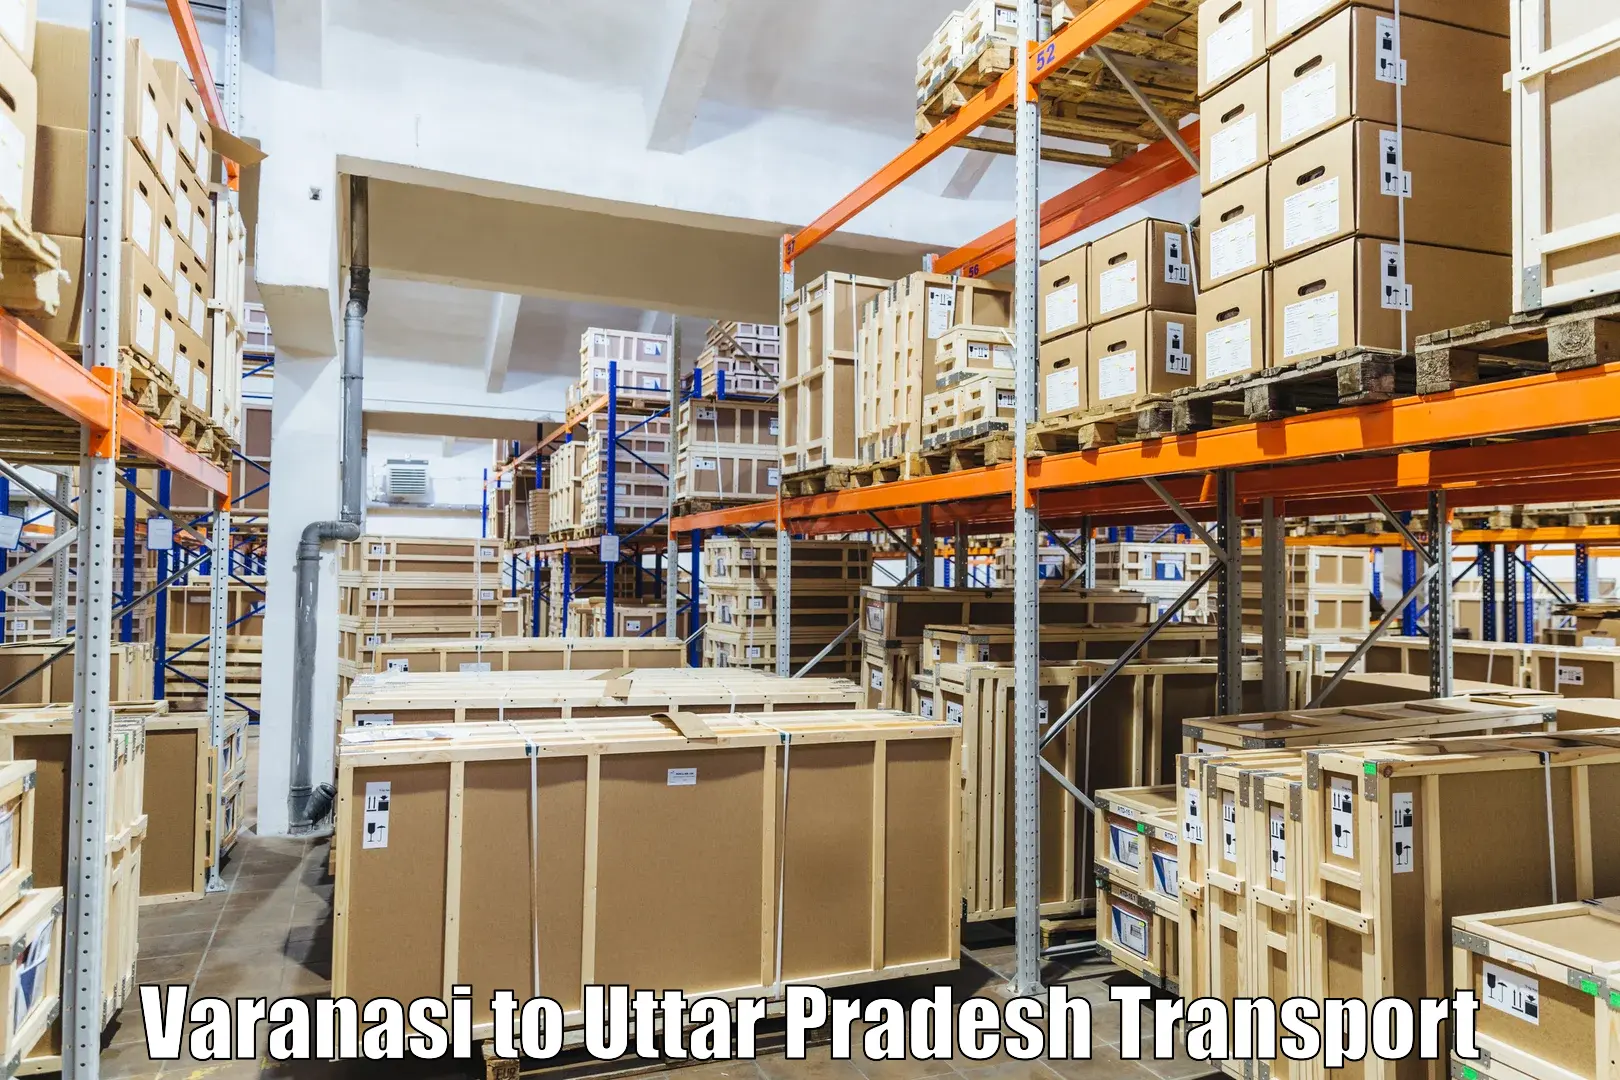 Container transportation services Varanasi to Baksha